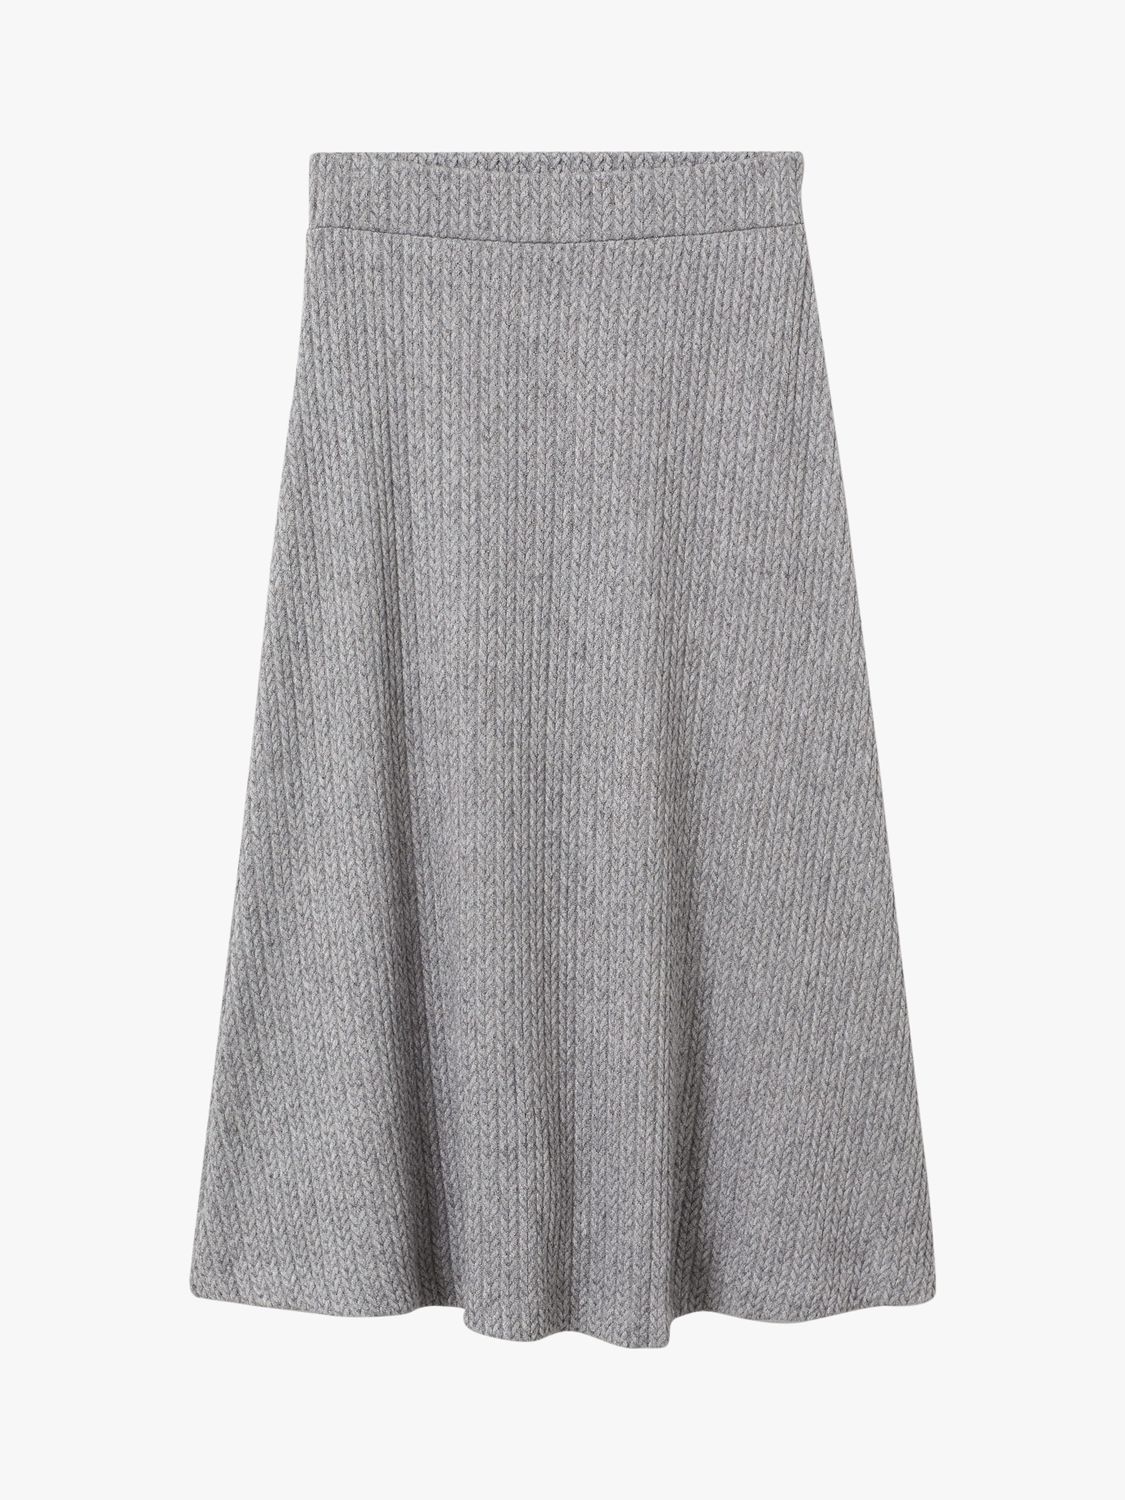 Mango Vega Midi Skirt, Medium Grey